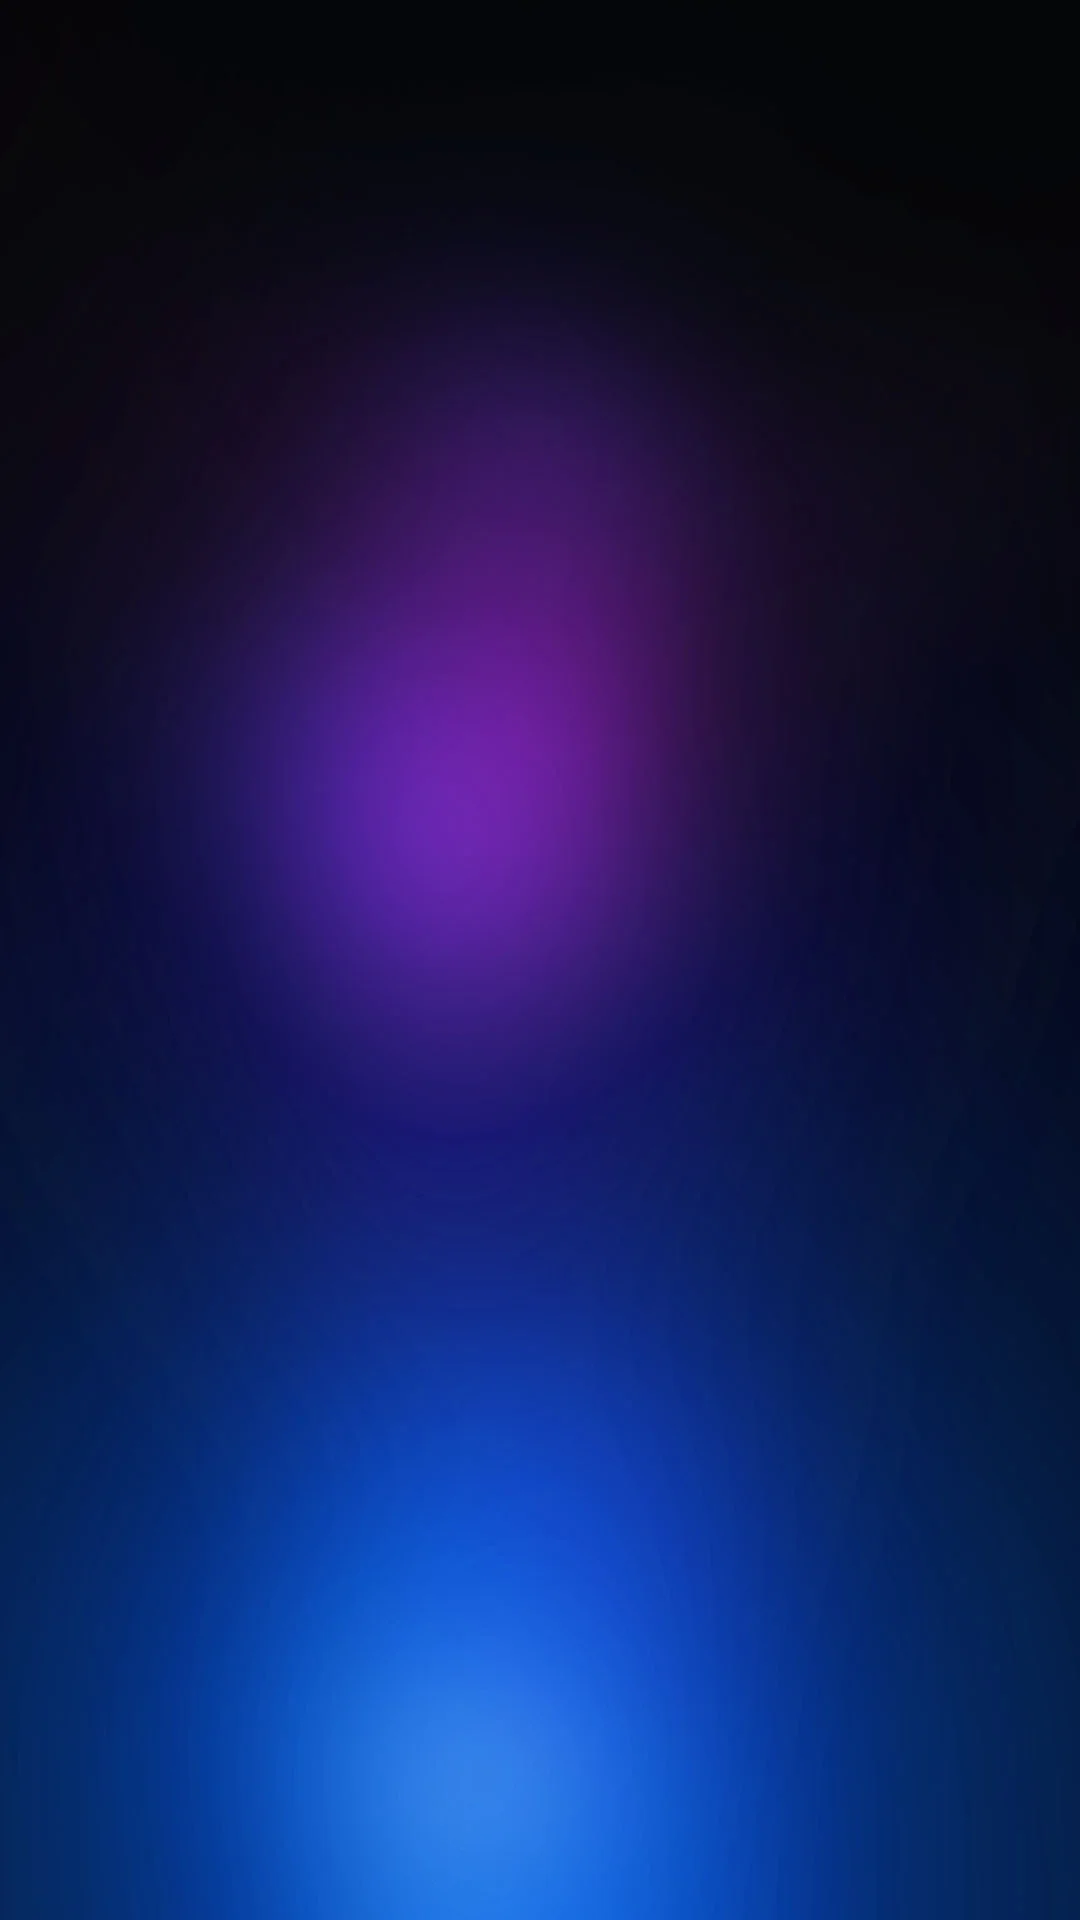 Hình nền Samsung Android có sự kết hợp tuyệt vời giữa màu tím và xanh dương sẽ khiến cho màn hình điện thoại của bạn trở nên đầy sắc màu và nổi bật. Khám phá ngay các mẫu thiết kế độc đáo và tiếp thêm động lực cho ngày mới.